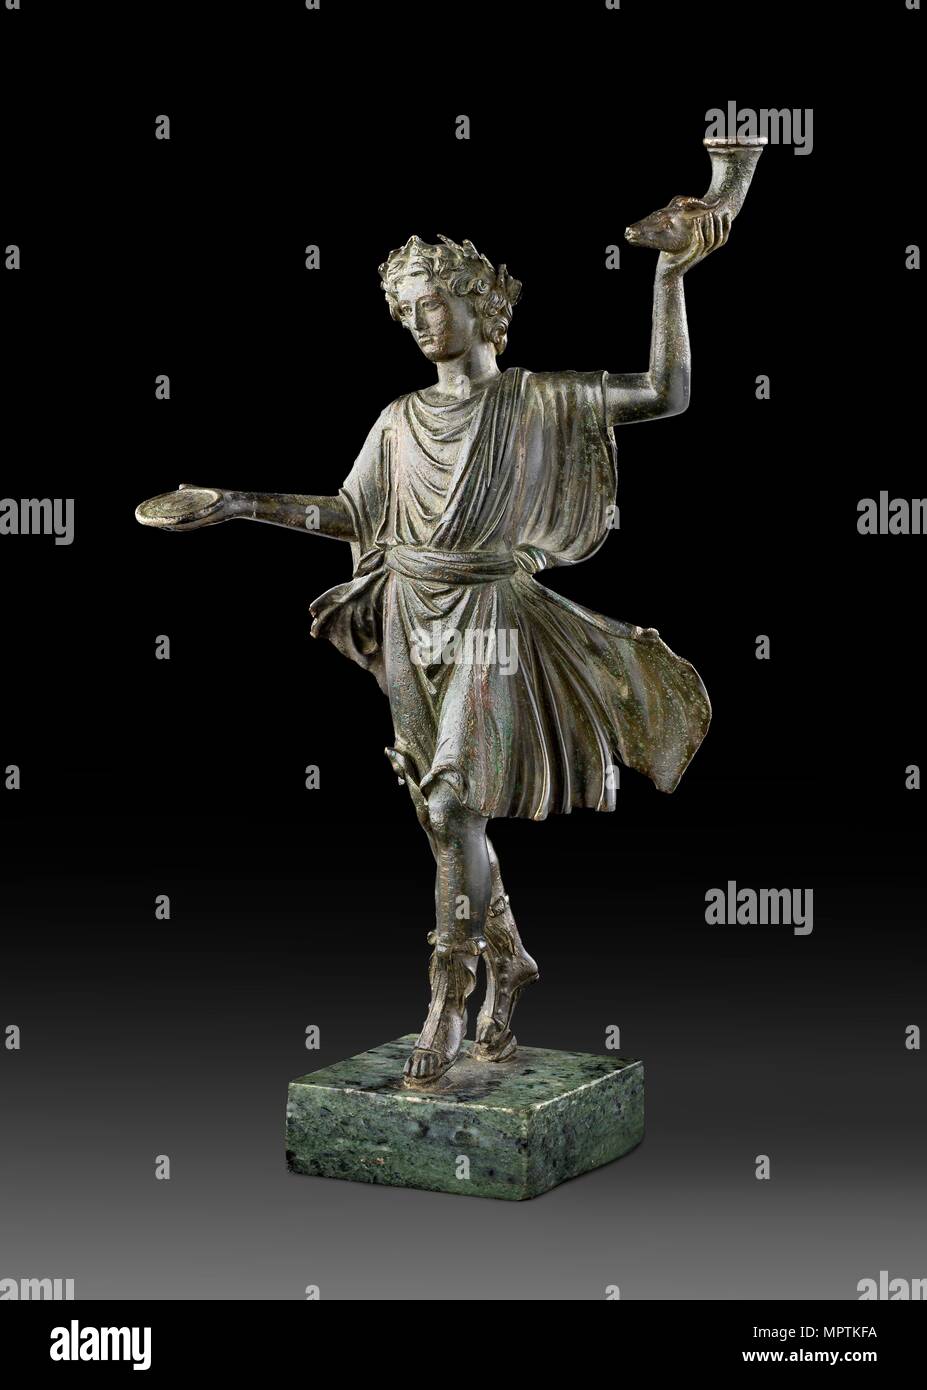 Estatuilla de bronce de un hogar Lar (Dios), el 1er siglo. Artista: Desconocido. Foto de stock